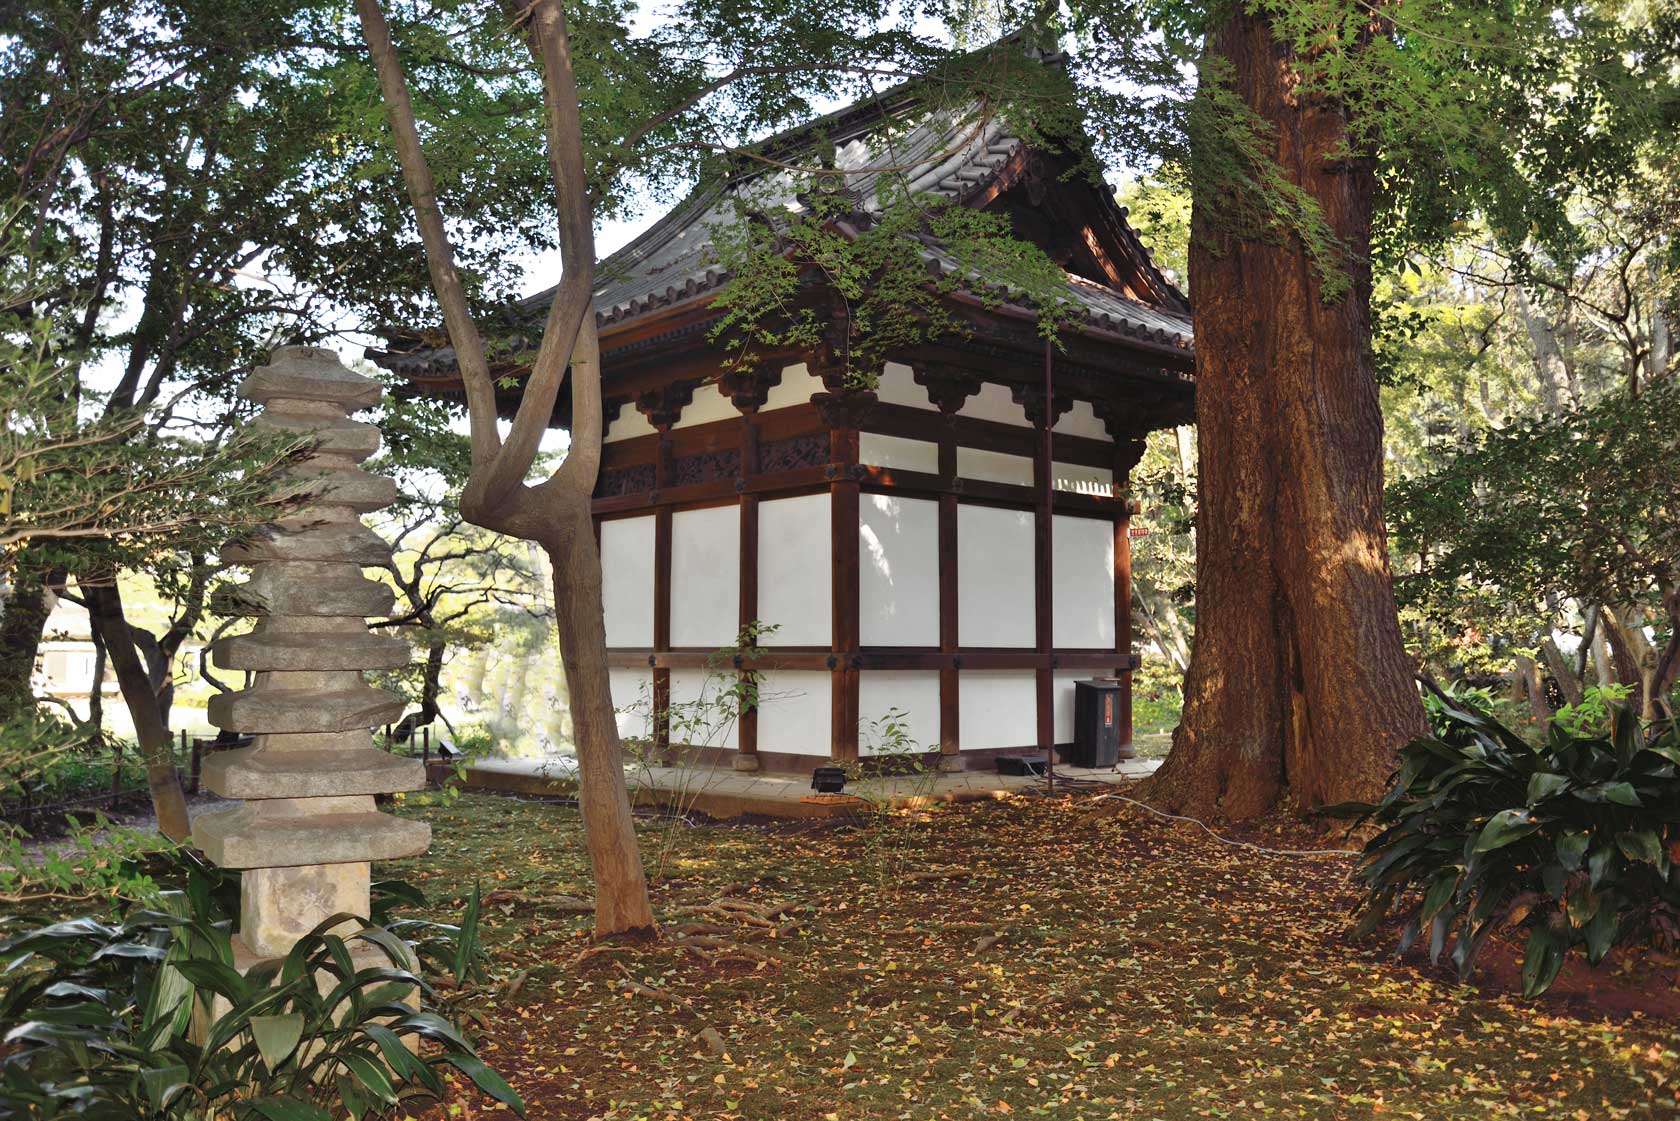 Juto Oido Tower in Sankeien Garden